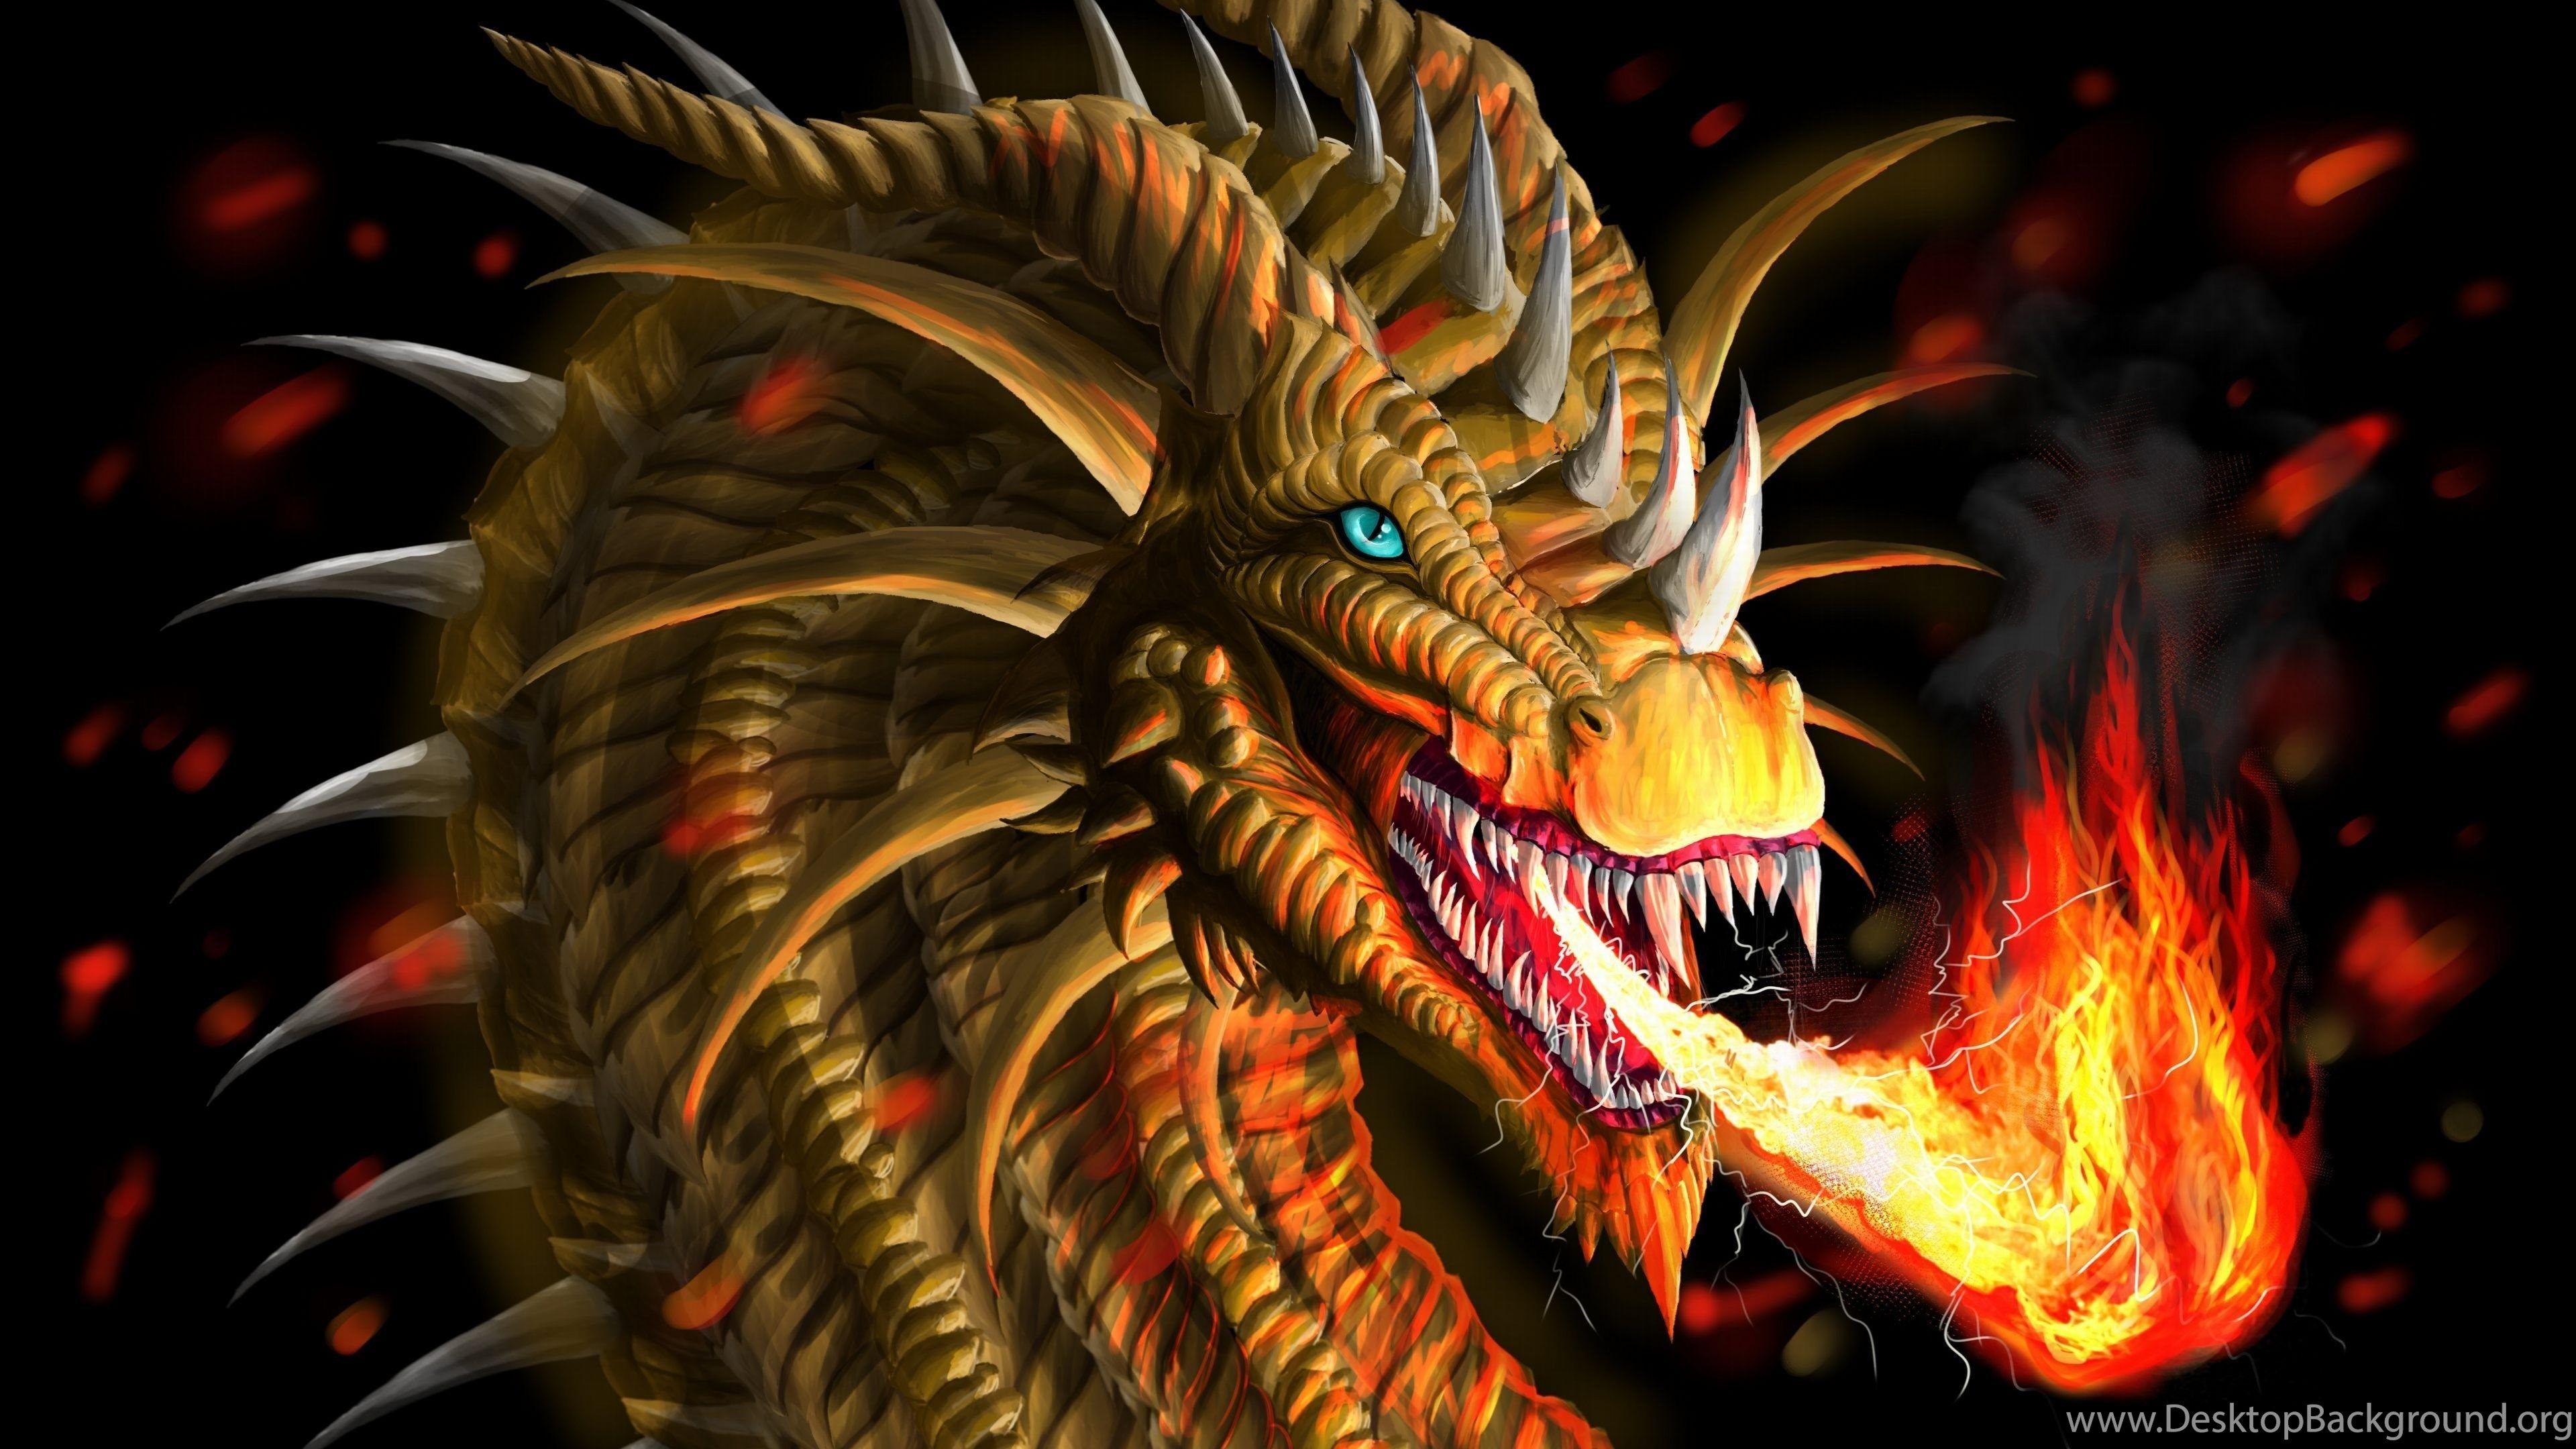 Fire Dragon Wallpaper Free Download In Ultra HD Resolution Desktop Background